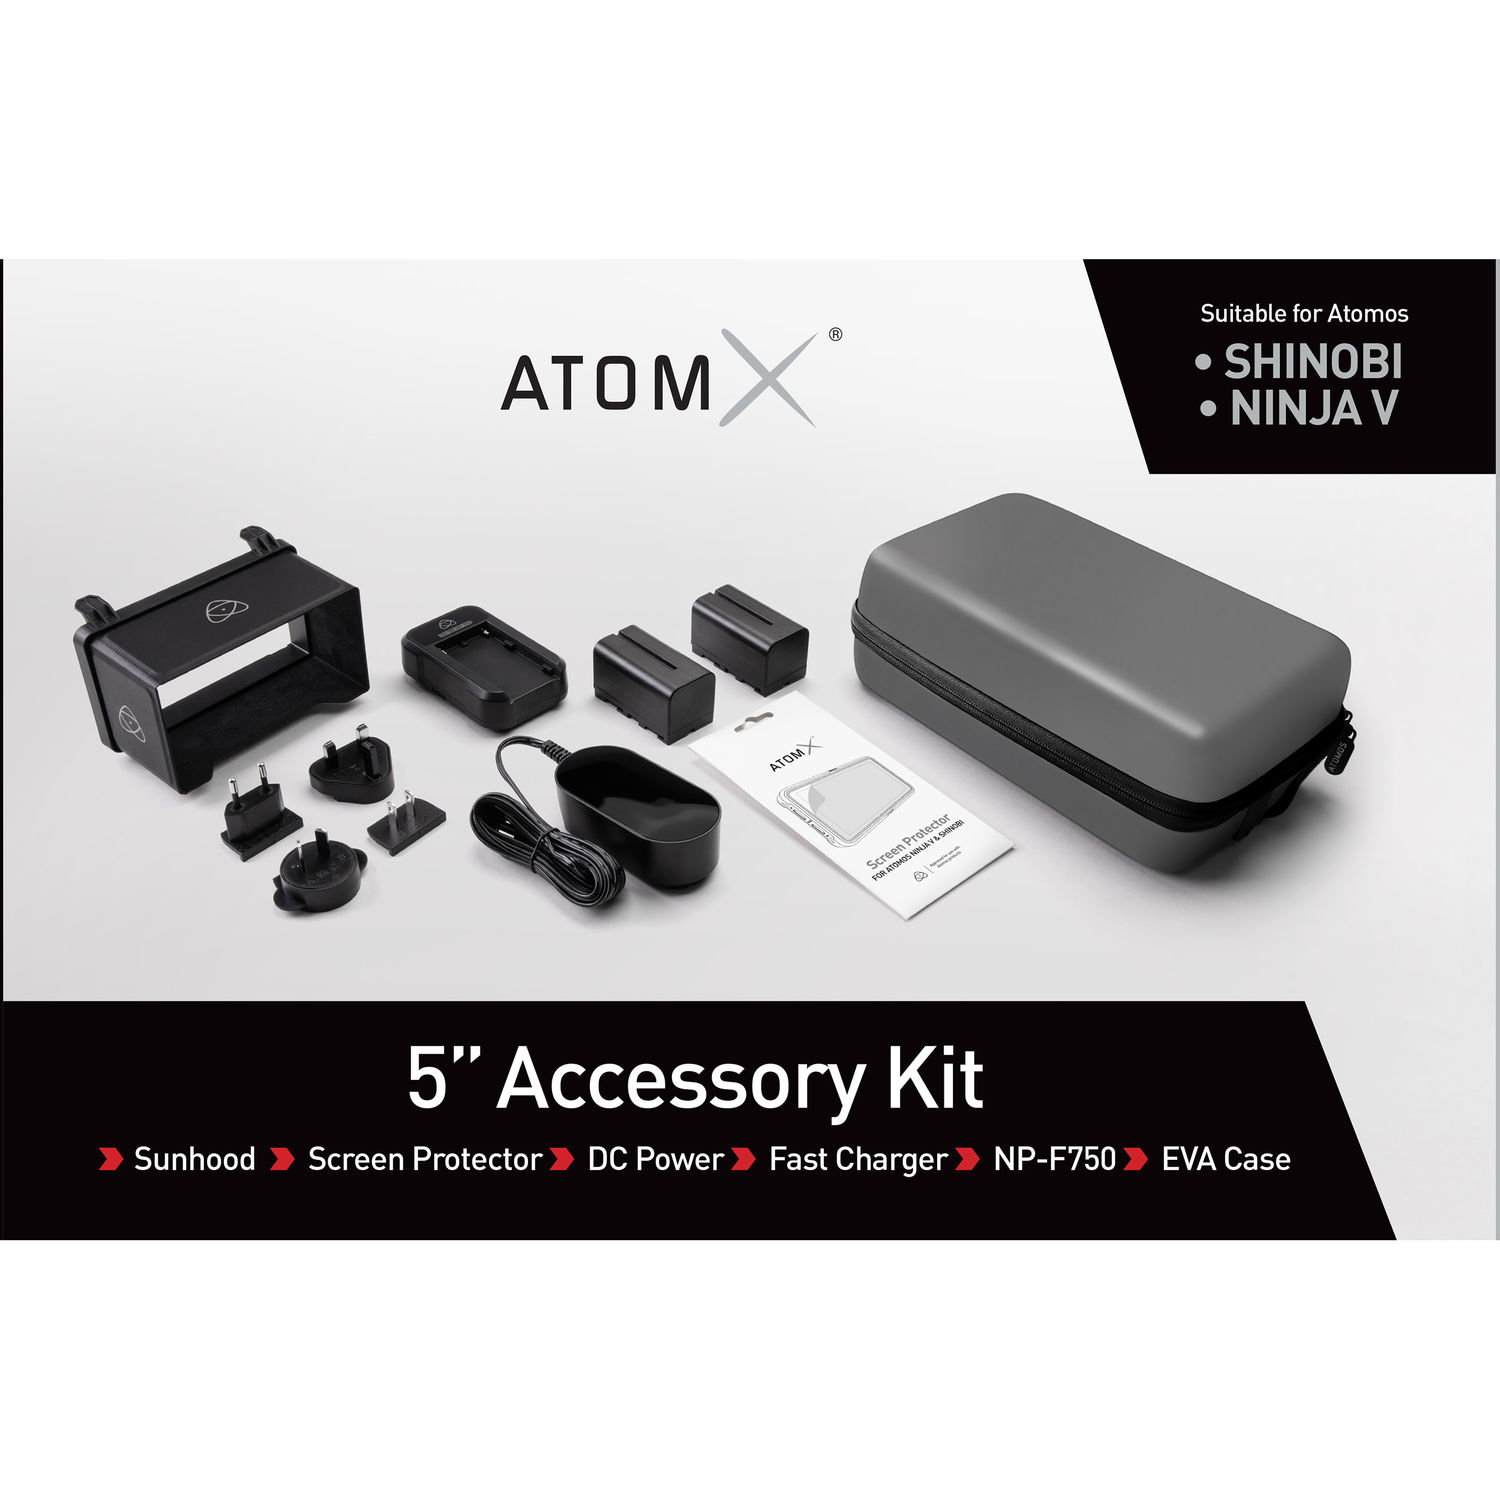 Bộ phụ kiện Atomos Kit for Shinobi / Shinobi SDI / Ninja V